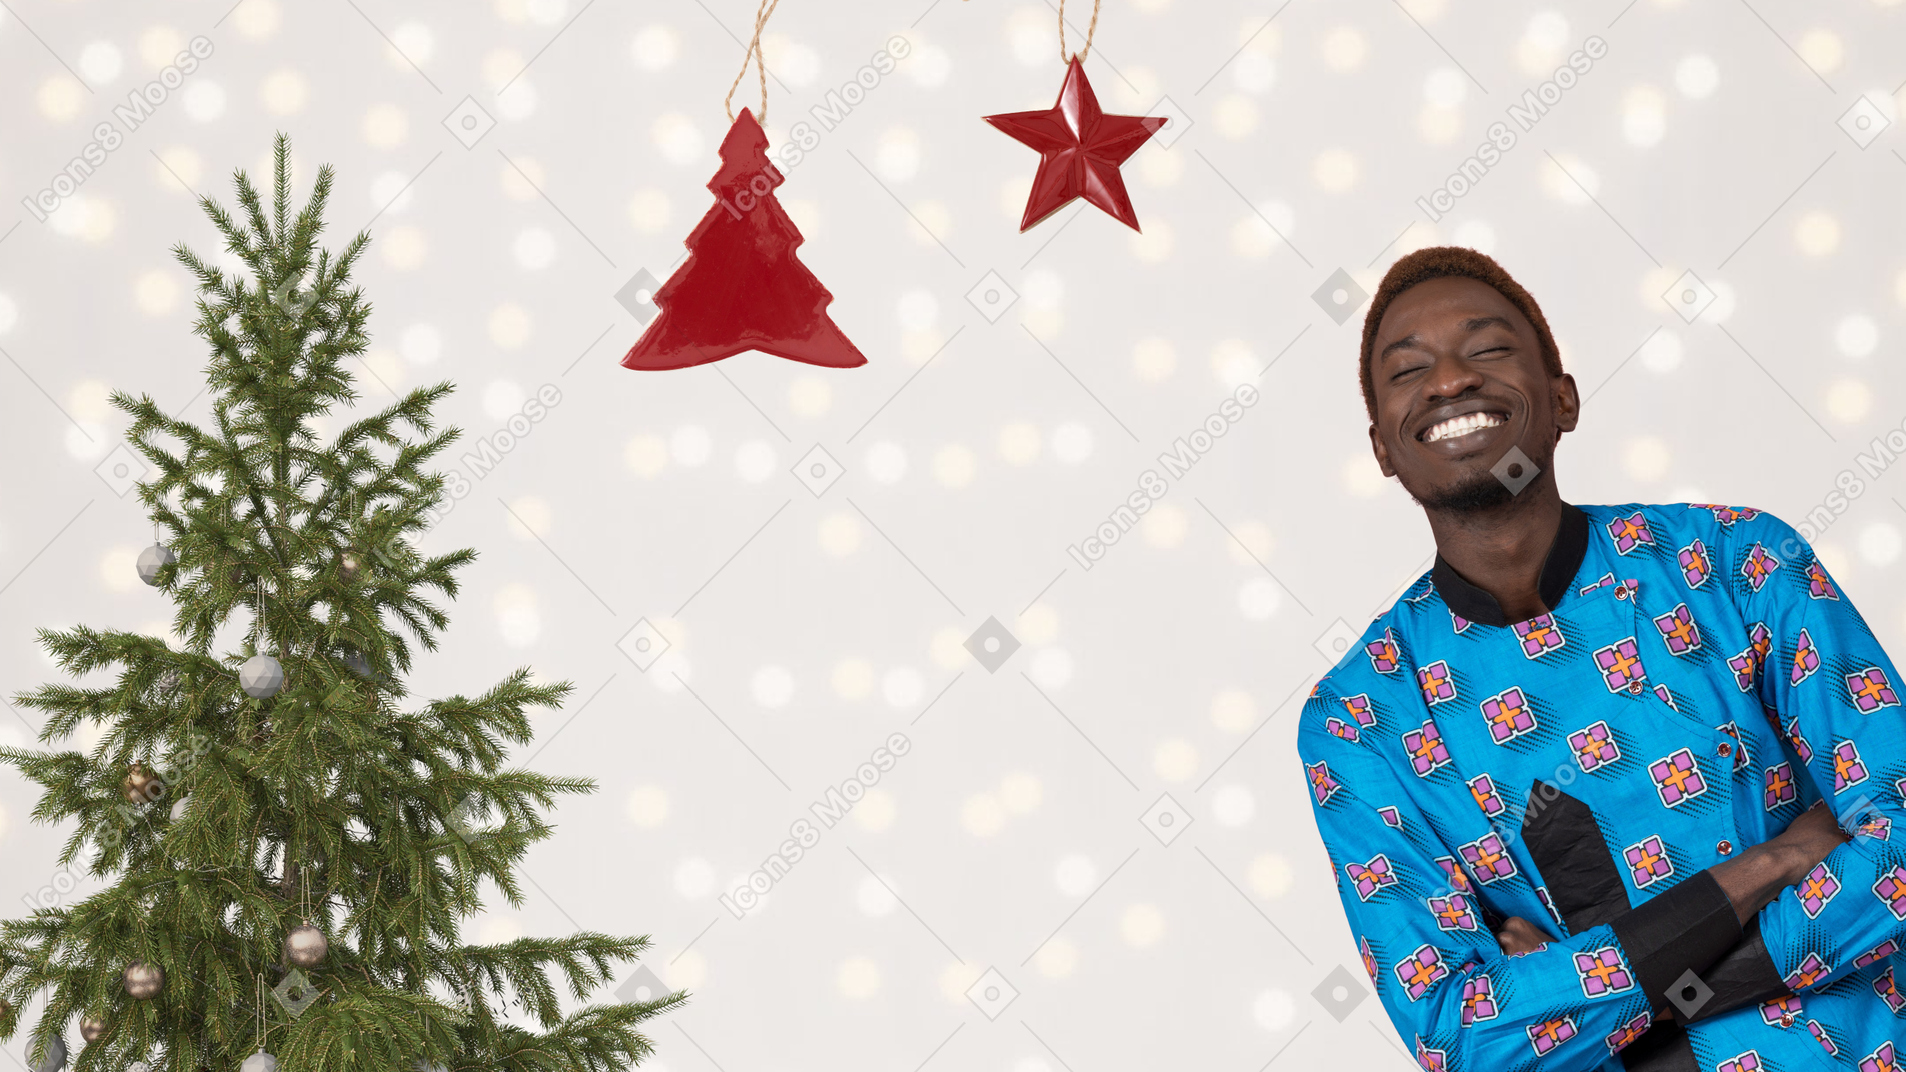 크리스마스 트리 근처에 서있는 행복한 사람